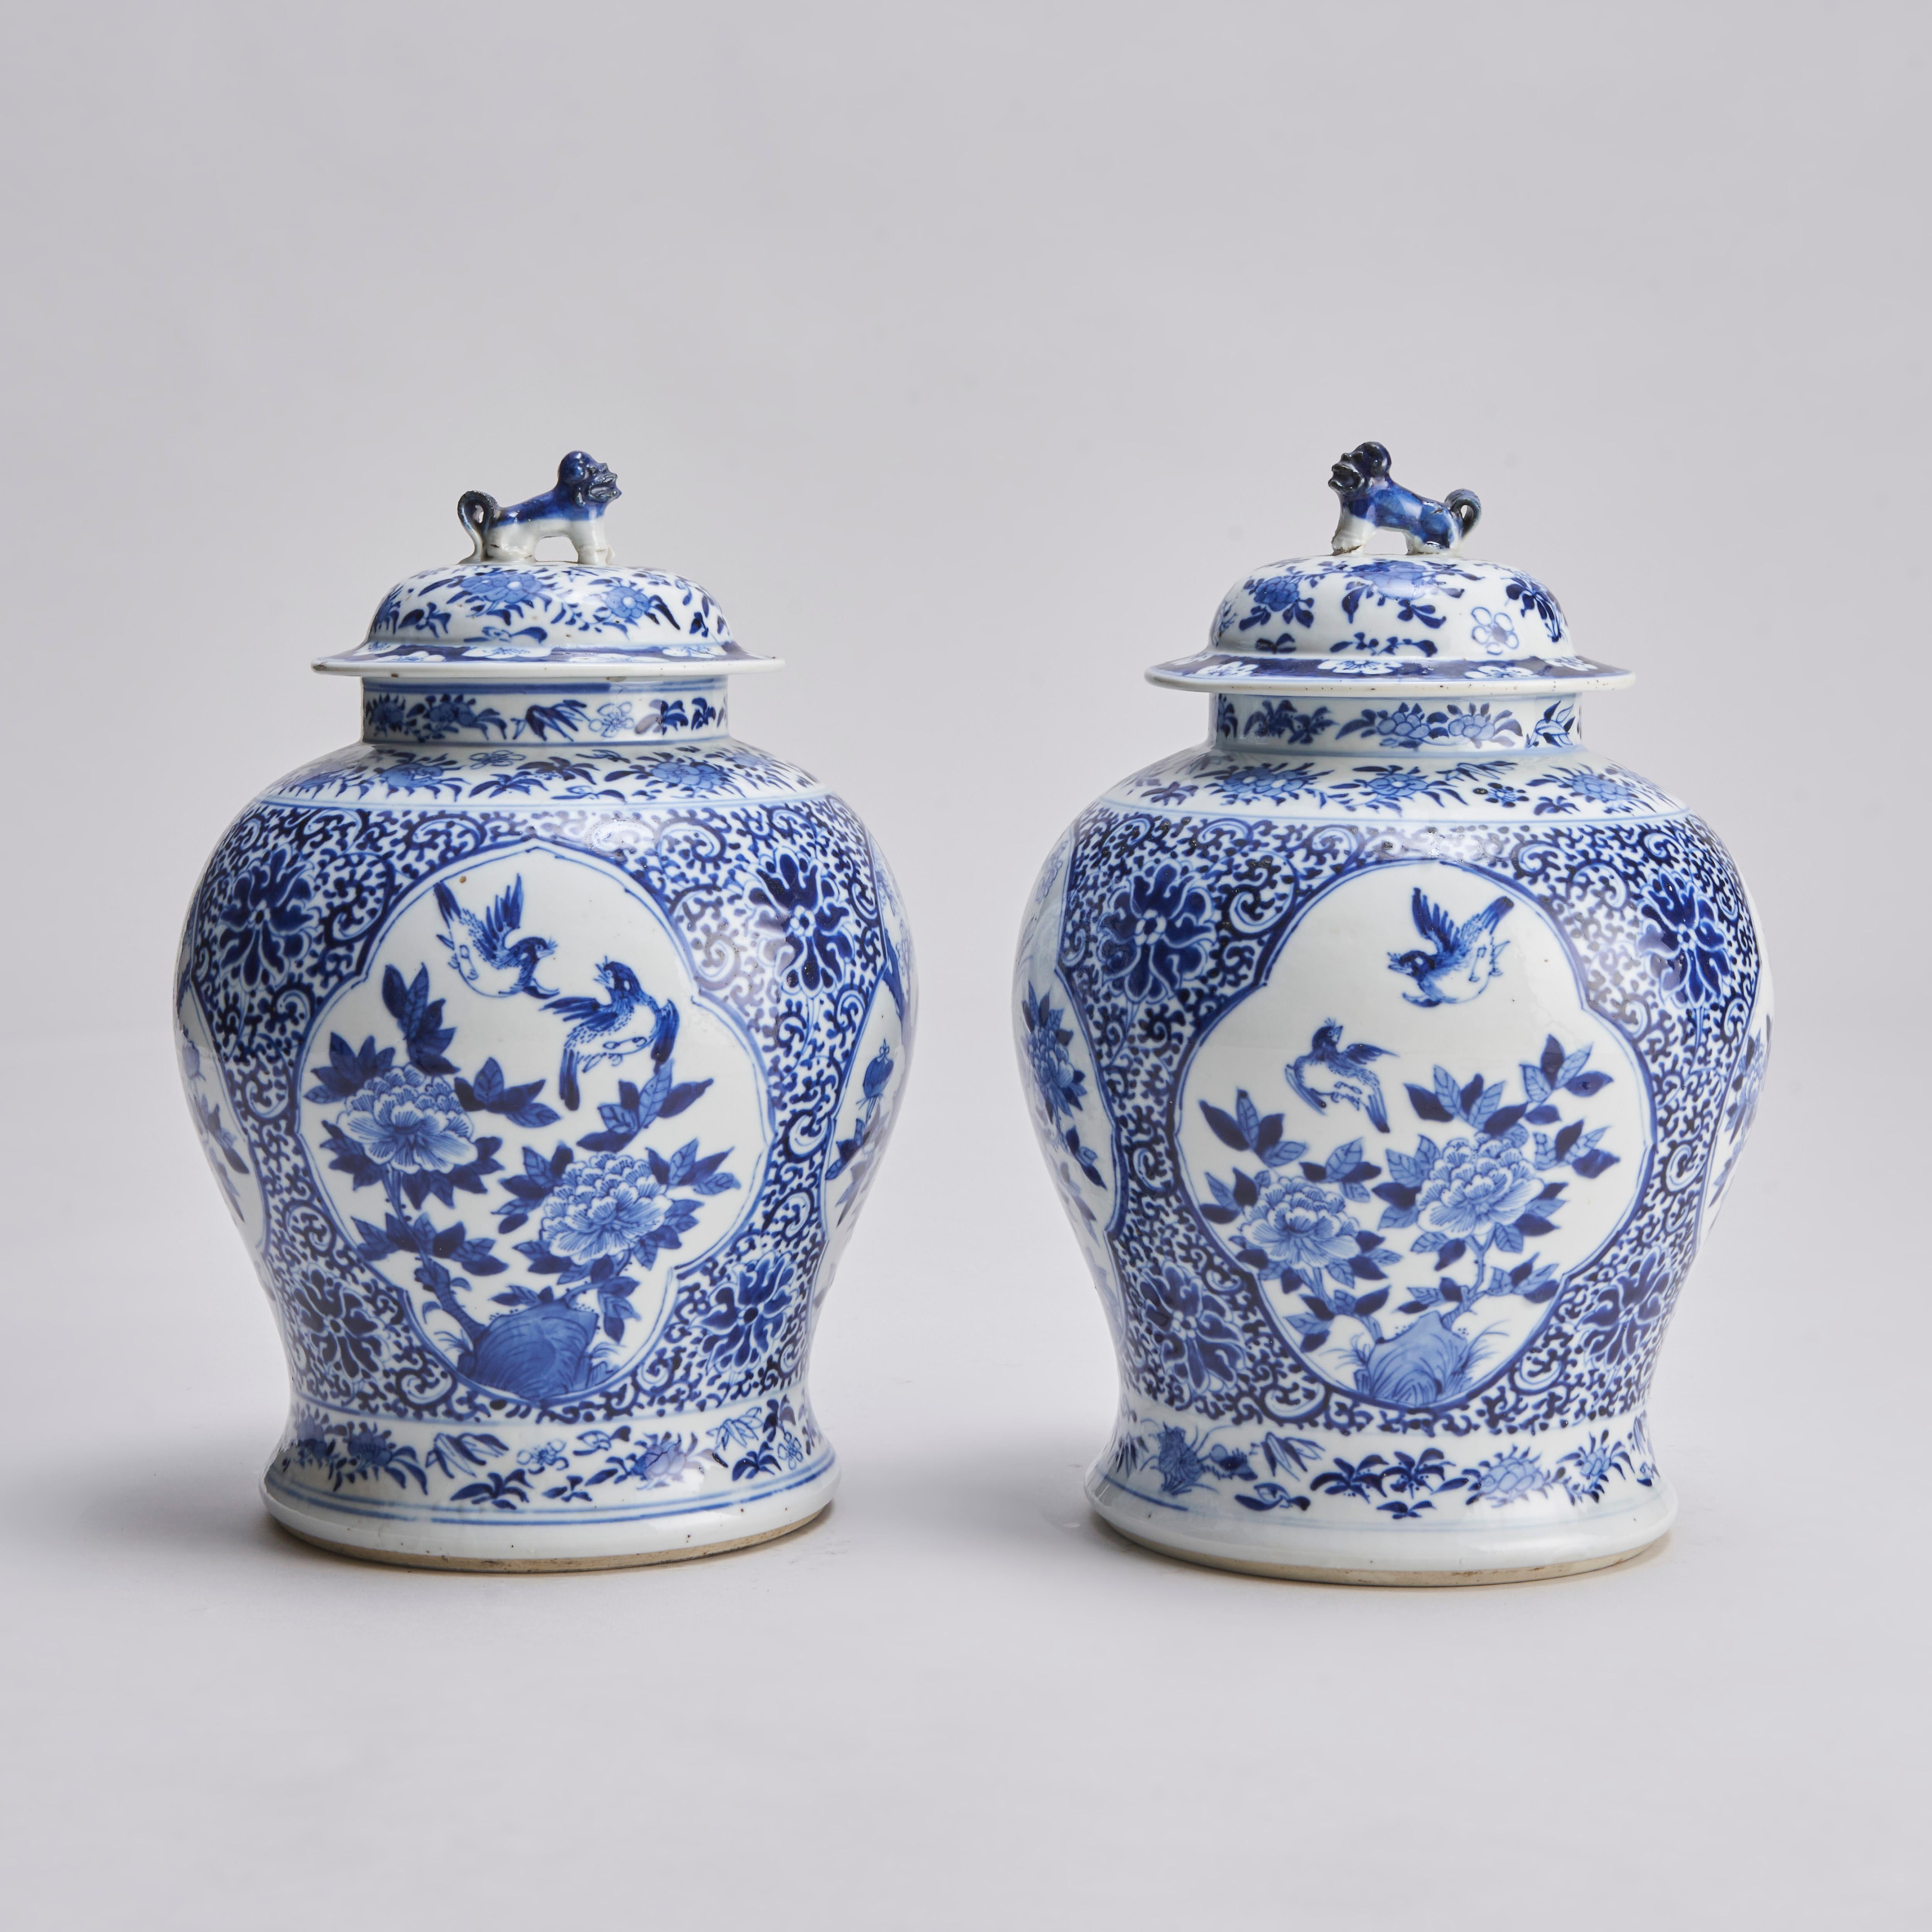 De notre collection de porcelaine bleu et blanc, cette paire de jarres et couvercles chinois du 19e siècle avec des boutons de chien Shi Shi. Les vases sont ornés de panneaux de décoration ludique représentant des oiseaux volant au-dessus de